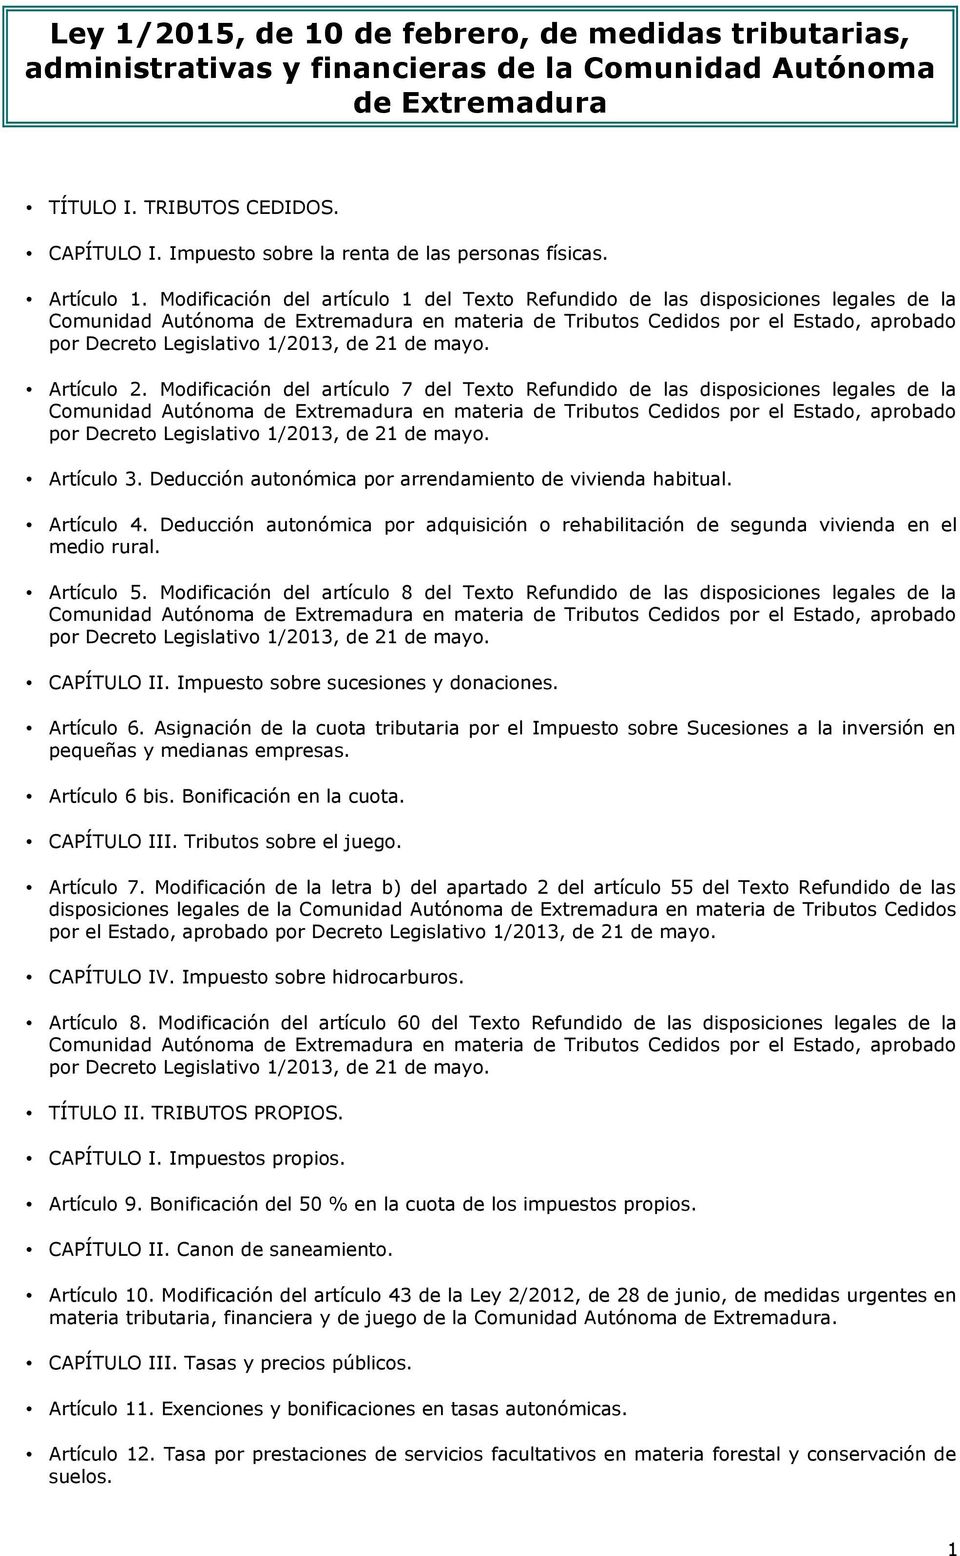 Modificación del artículo 1 del Texto Refundido de las disposiciones legales de la Comunidad Autónoma de Extremadura en materia de Tributos Cedidos por el Estado, aprobado por Decreto Legislativo